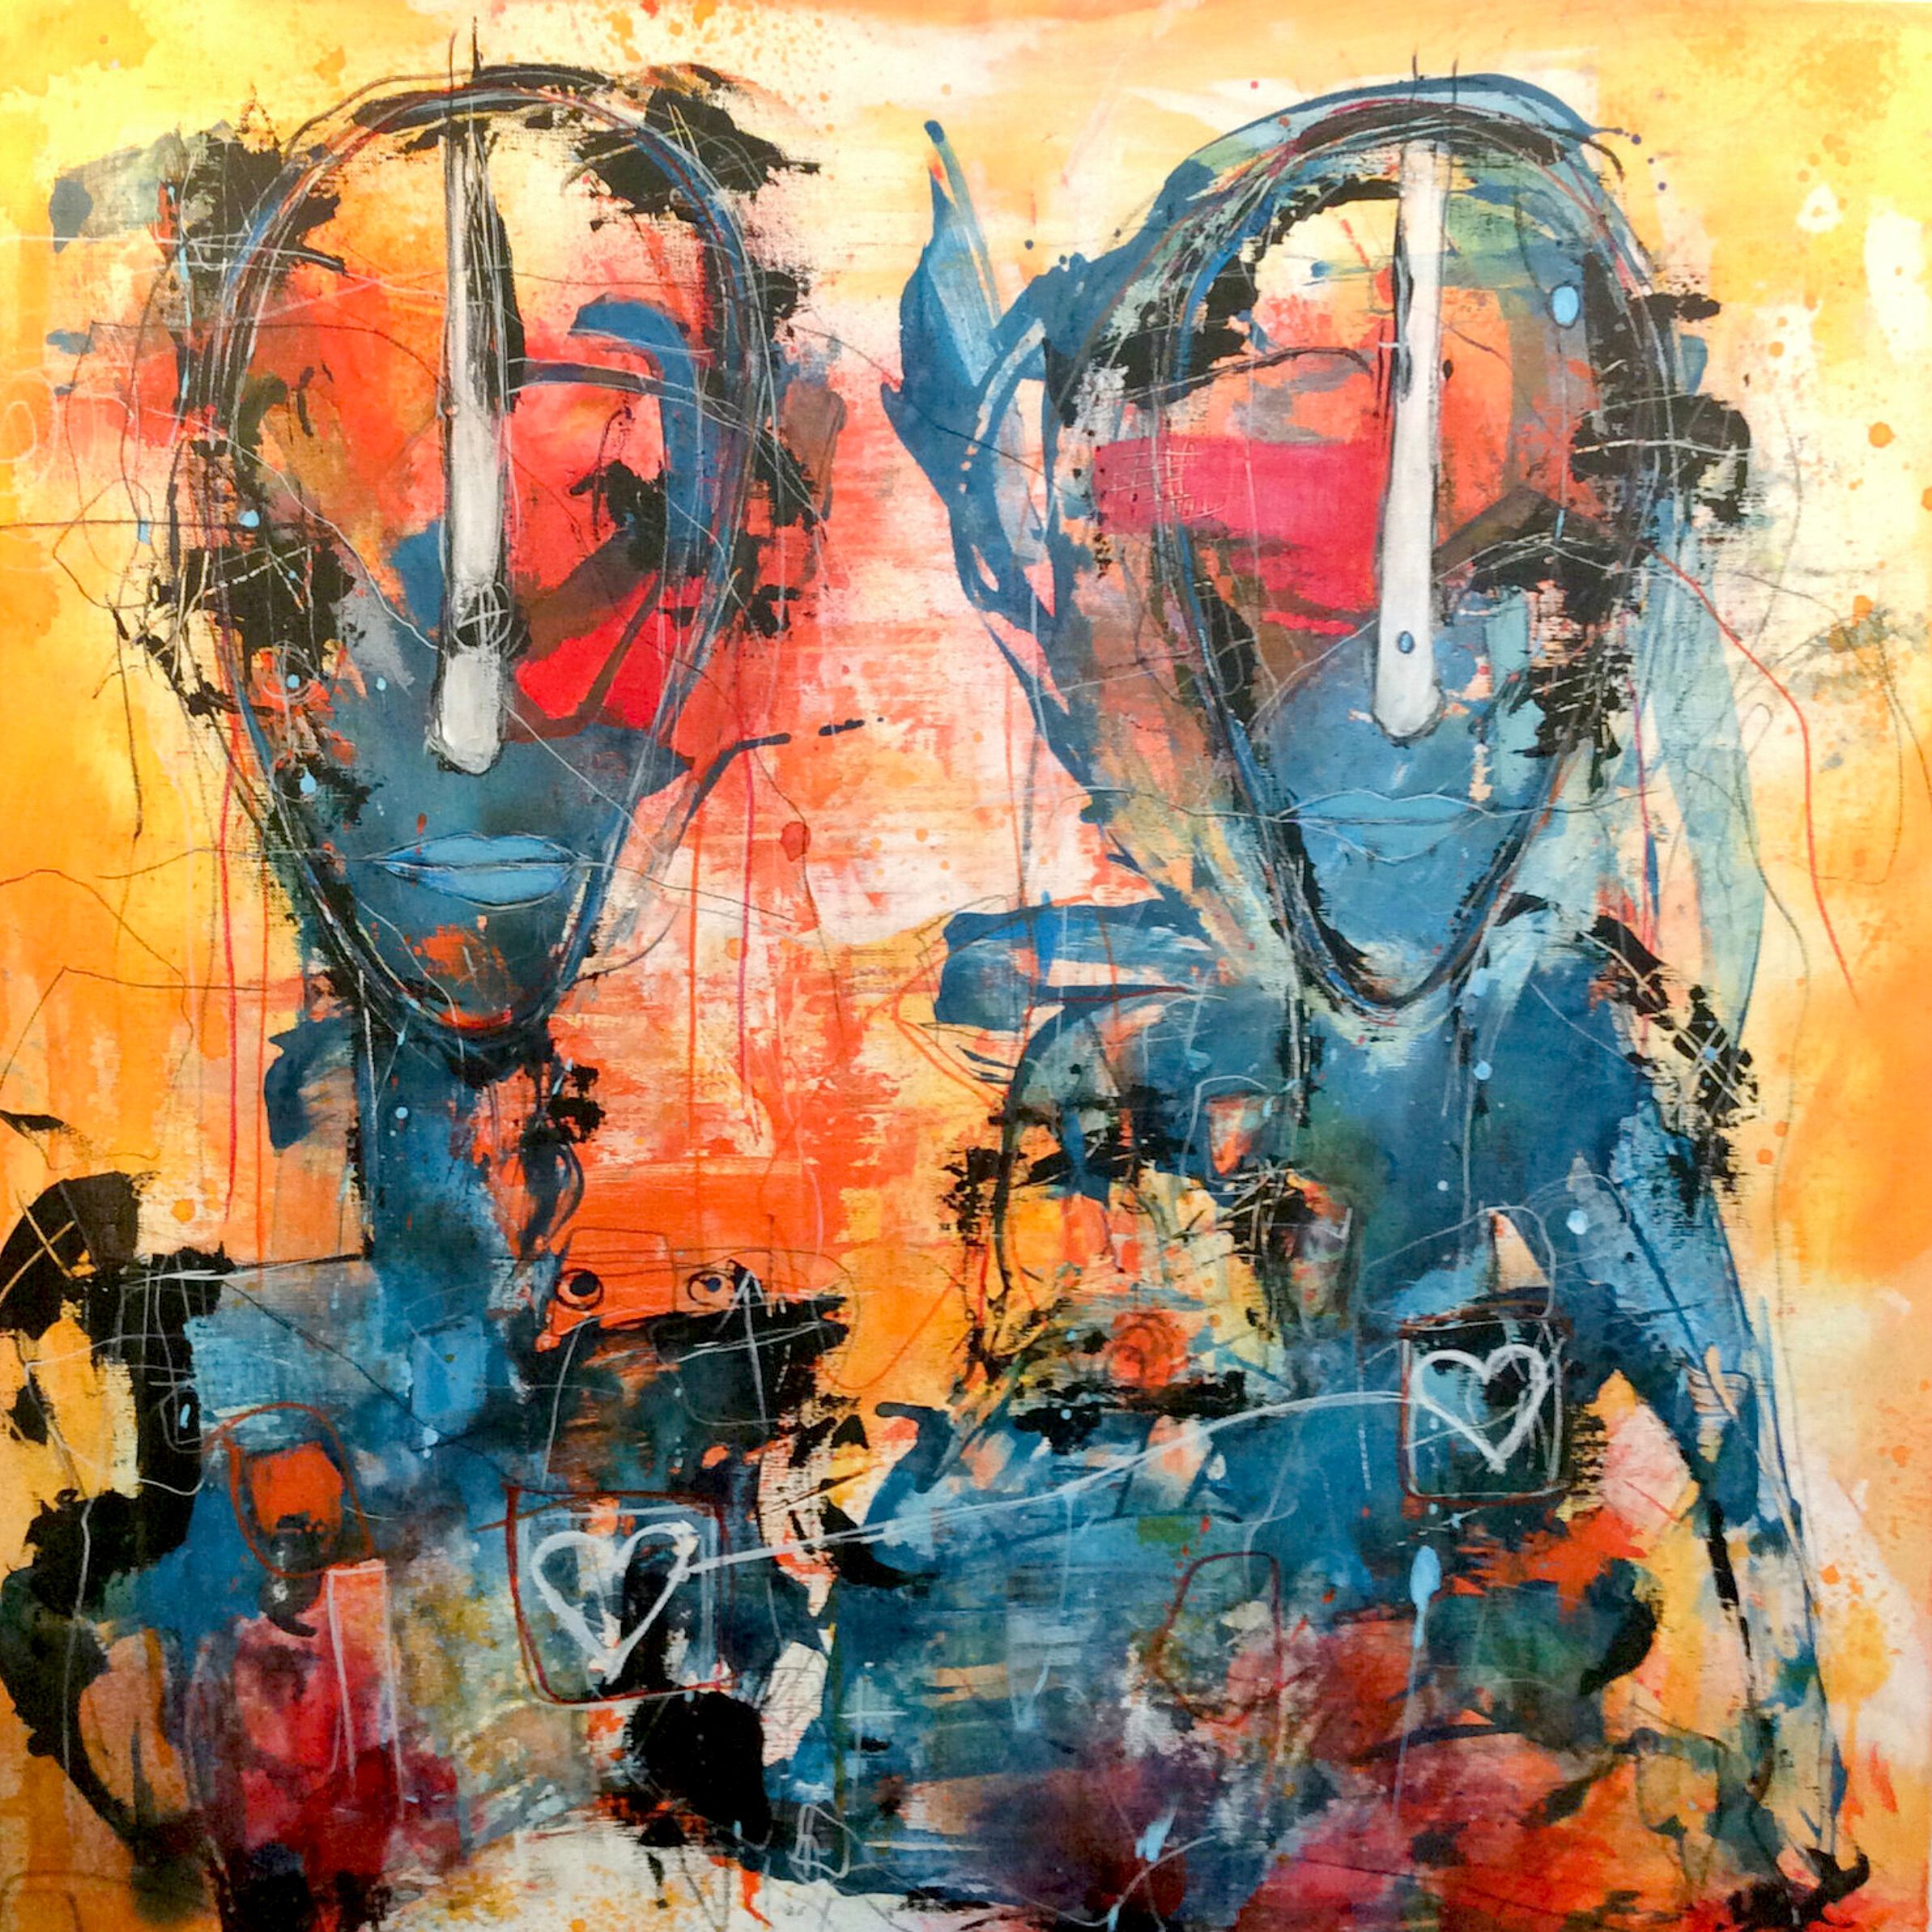 Le portrait semi-abstrait d'Ilona Schmidt "Mit dem Herzen verbunden" (Relié par le cœur) représente deux personnes/visages. La palette de couleurs du tableau se compose de différentes nuances de bleu, de jaune et de rouge qui se fondent harmonieusement.